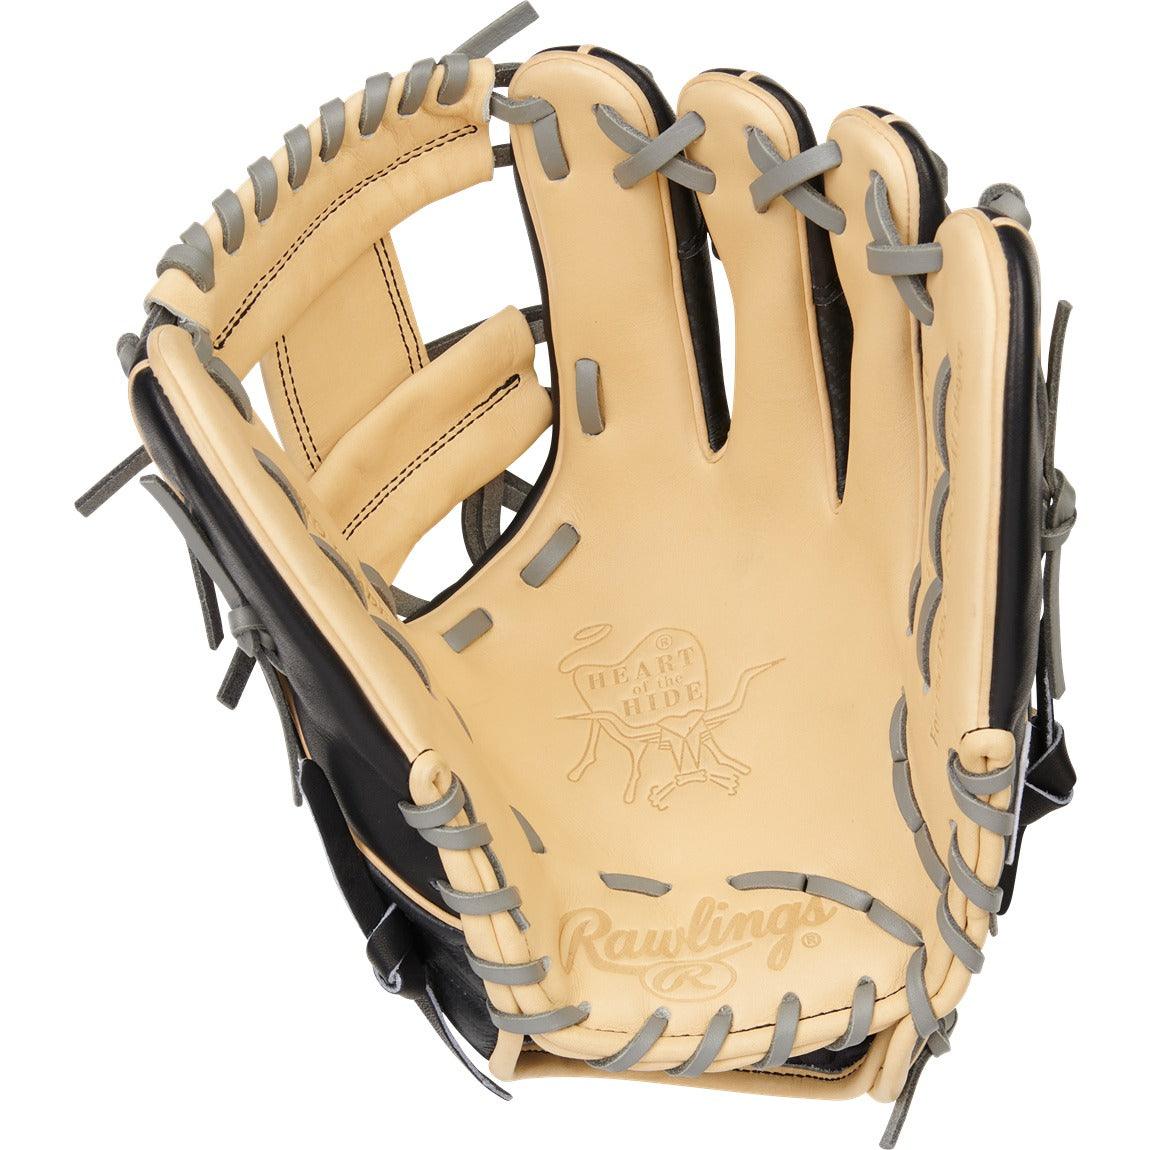 Heart Of The Hide 11.5" Hyper Shell Baseball Glove - Senior - Sports Excellence